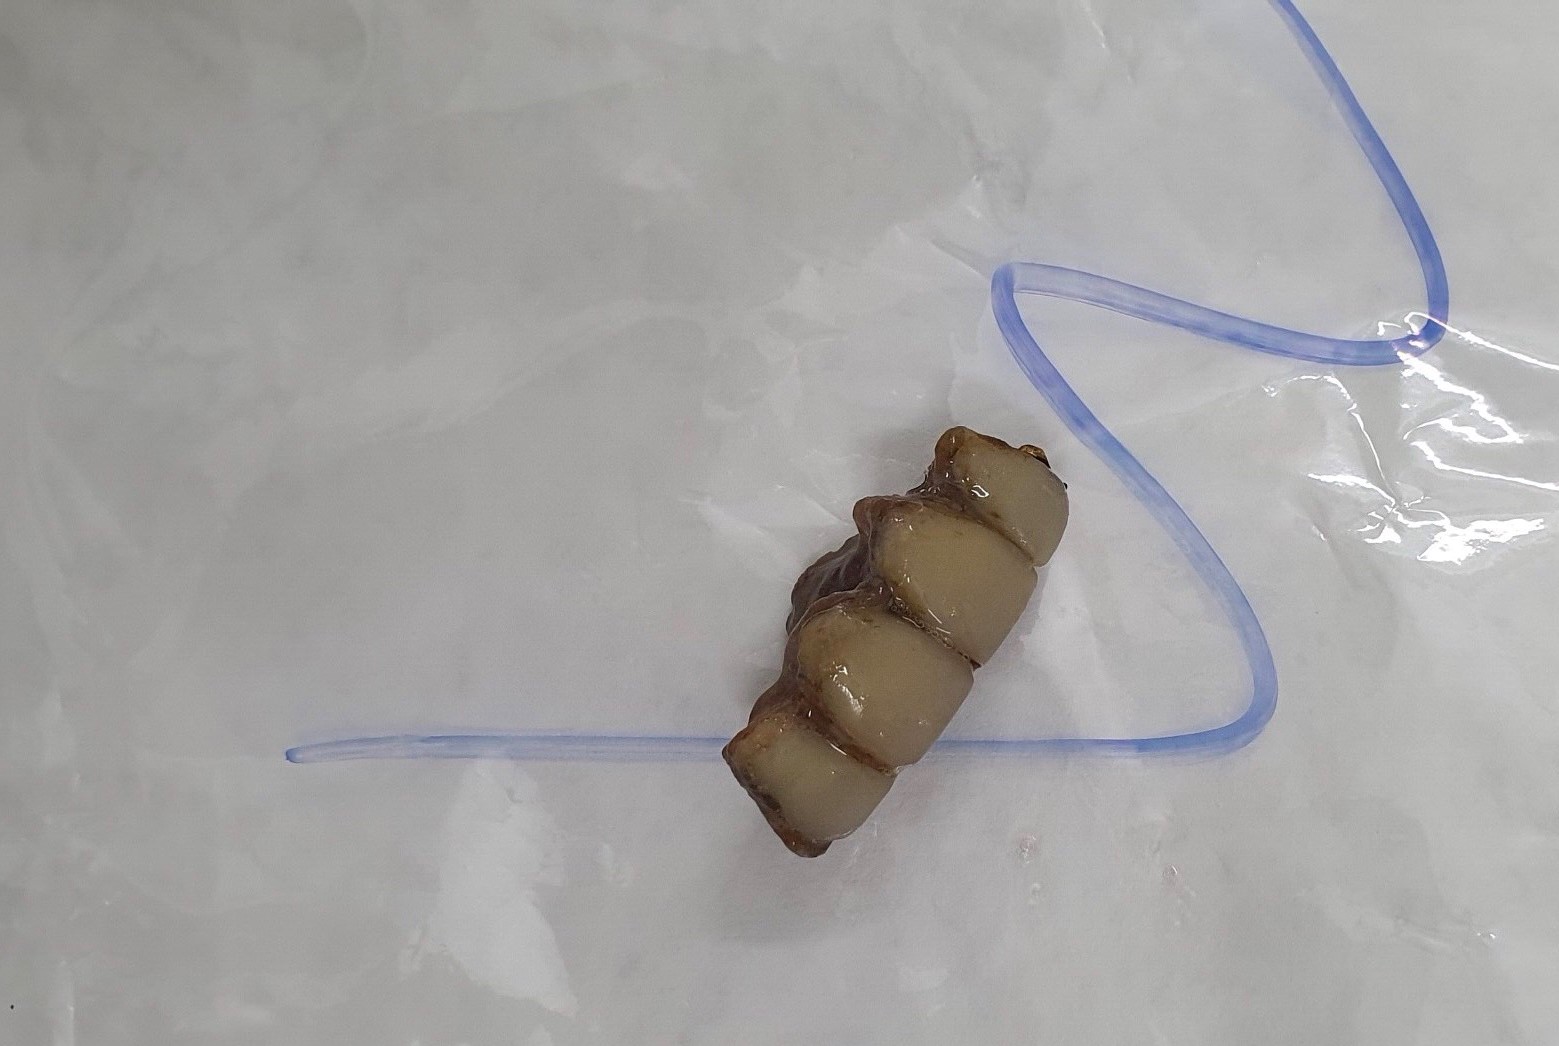 Nguyên hàm răng giả 4 chiếc sau khi được lấy ra 